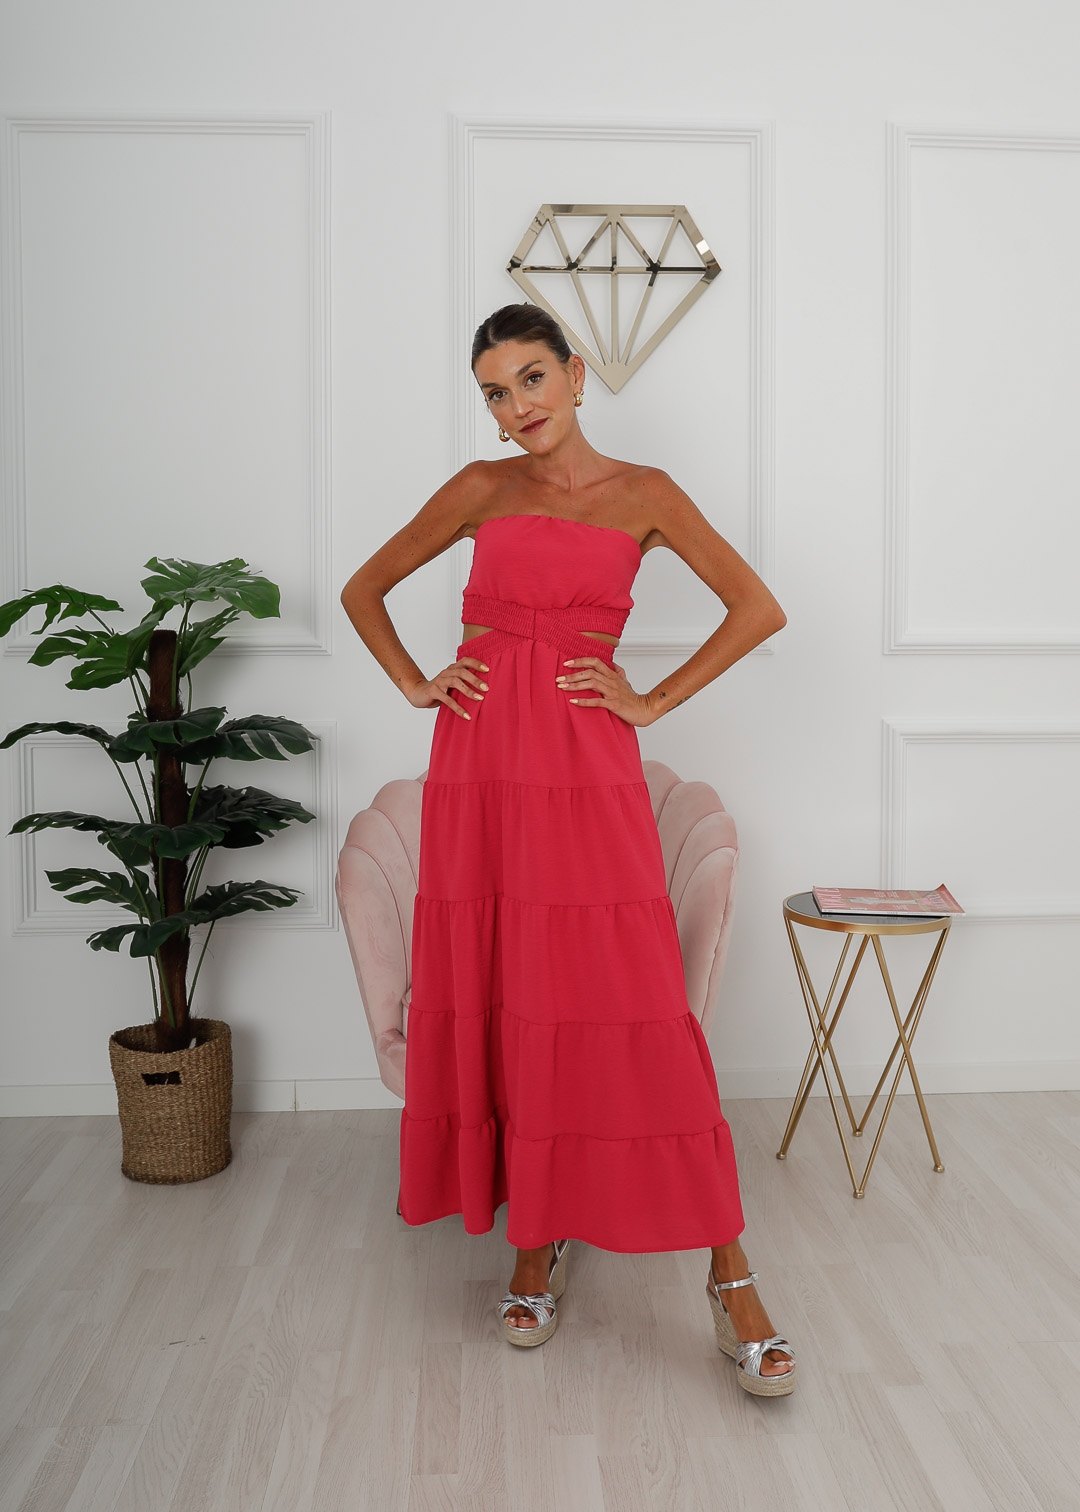 Pink Strapless Dress - Cut Out Dress